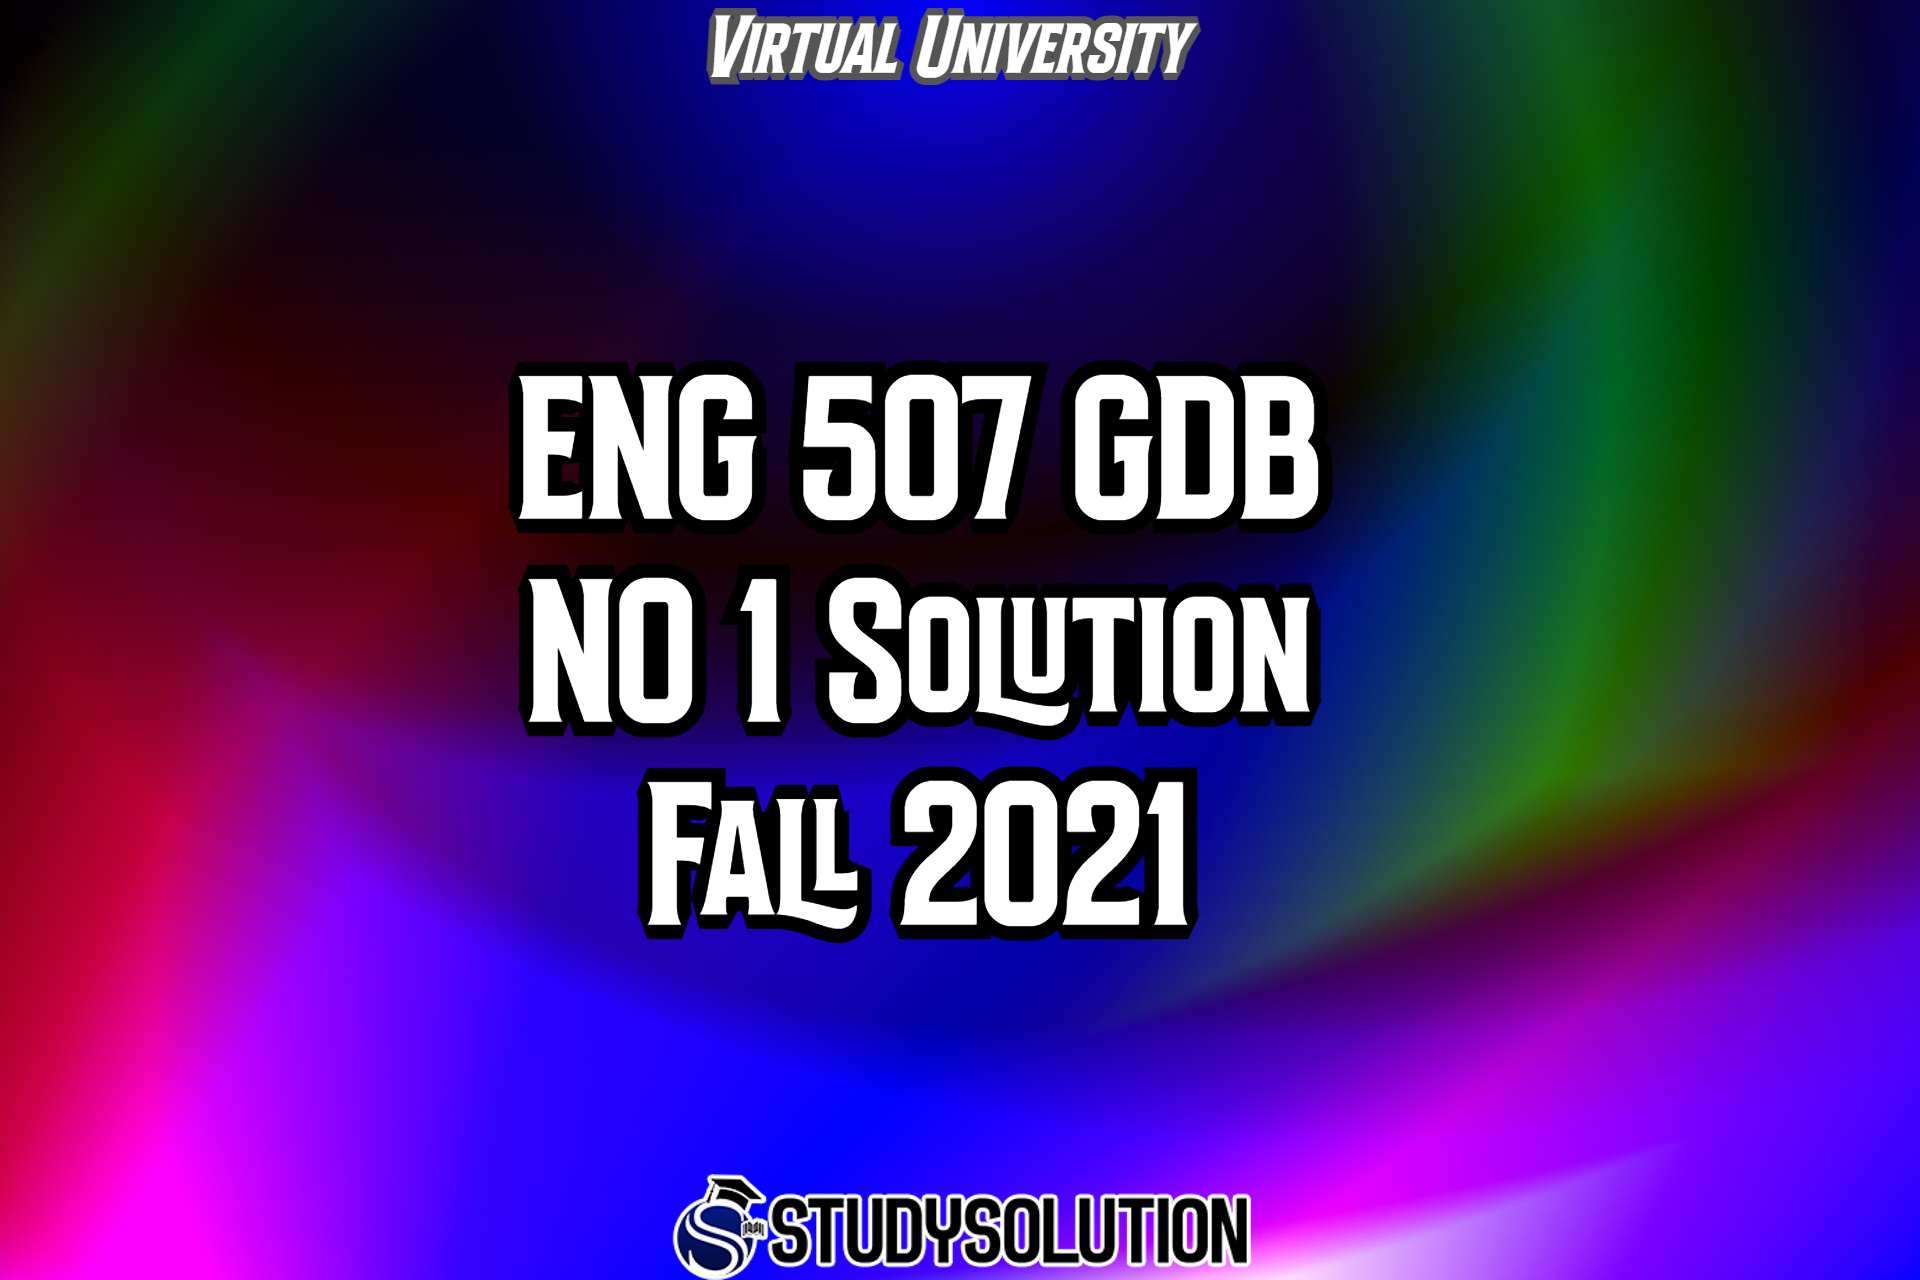 ENG507 GDB No 1 Solution Fall 2021